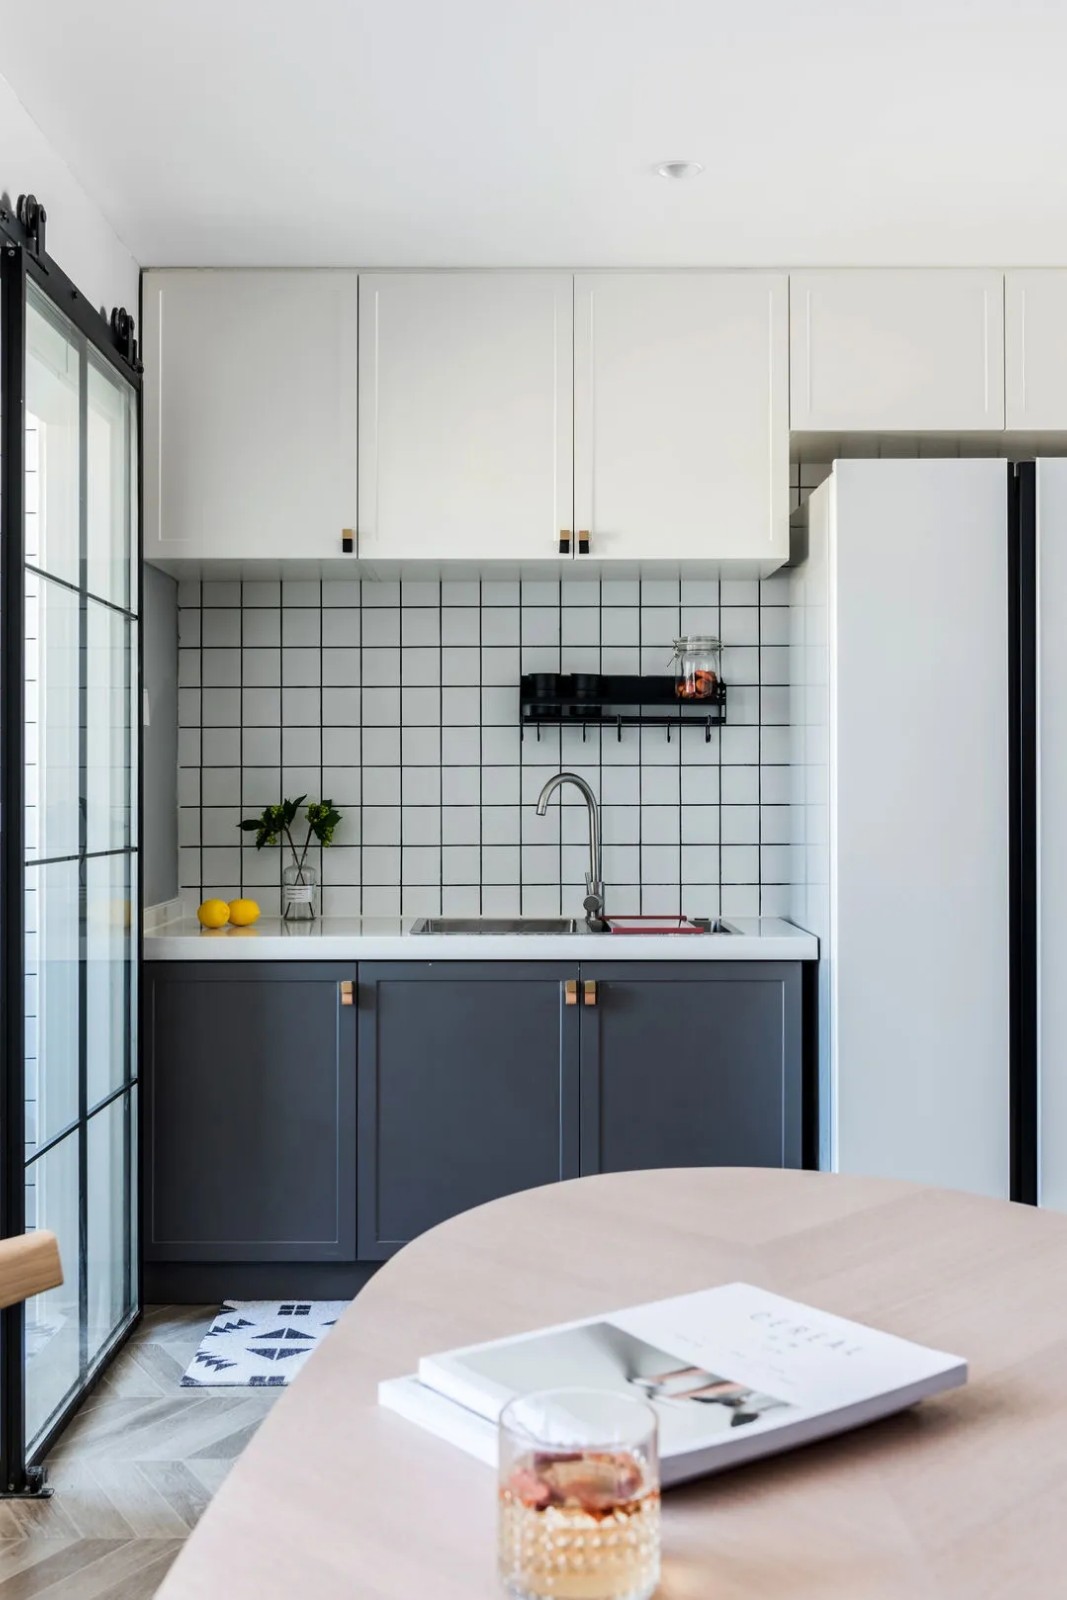 装修案例北欧风格室内装修效果图-厨房